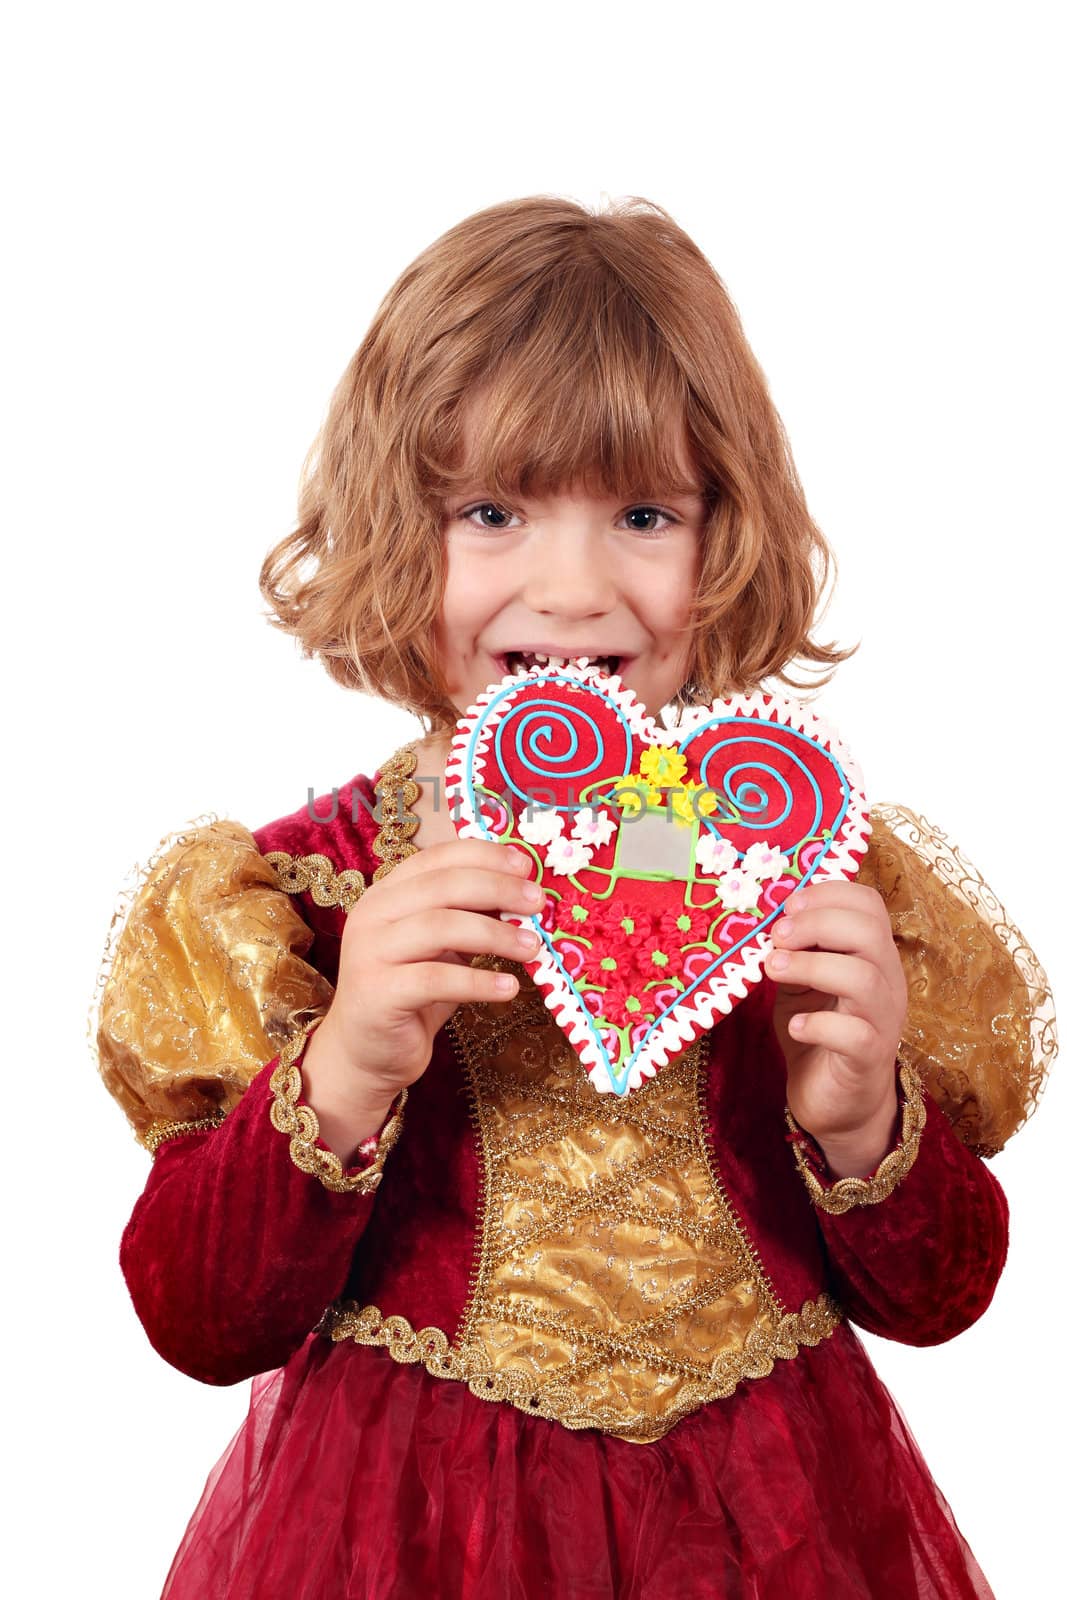 little girl eating gingerbread heart